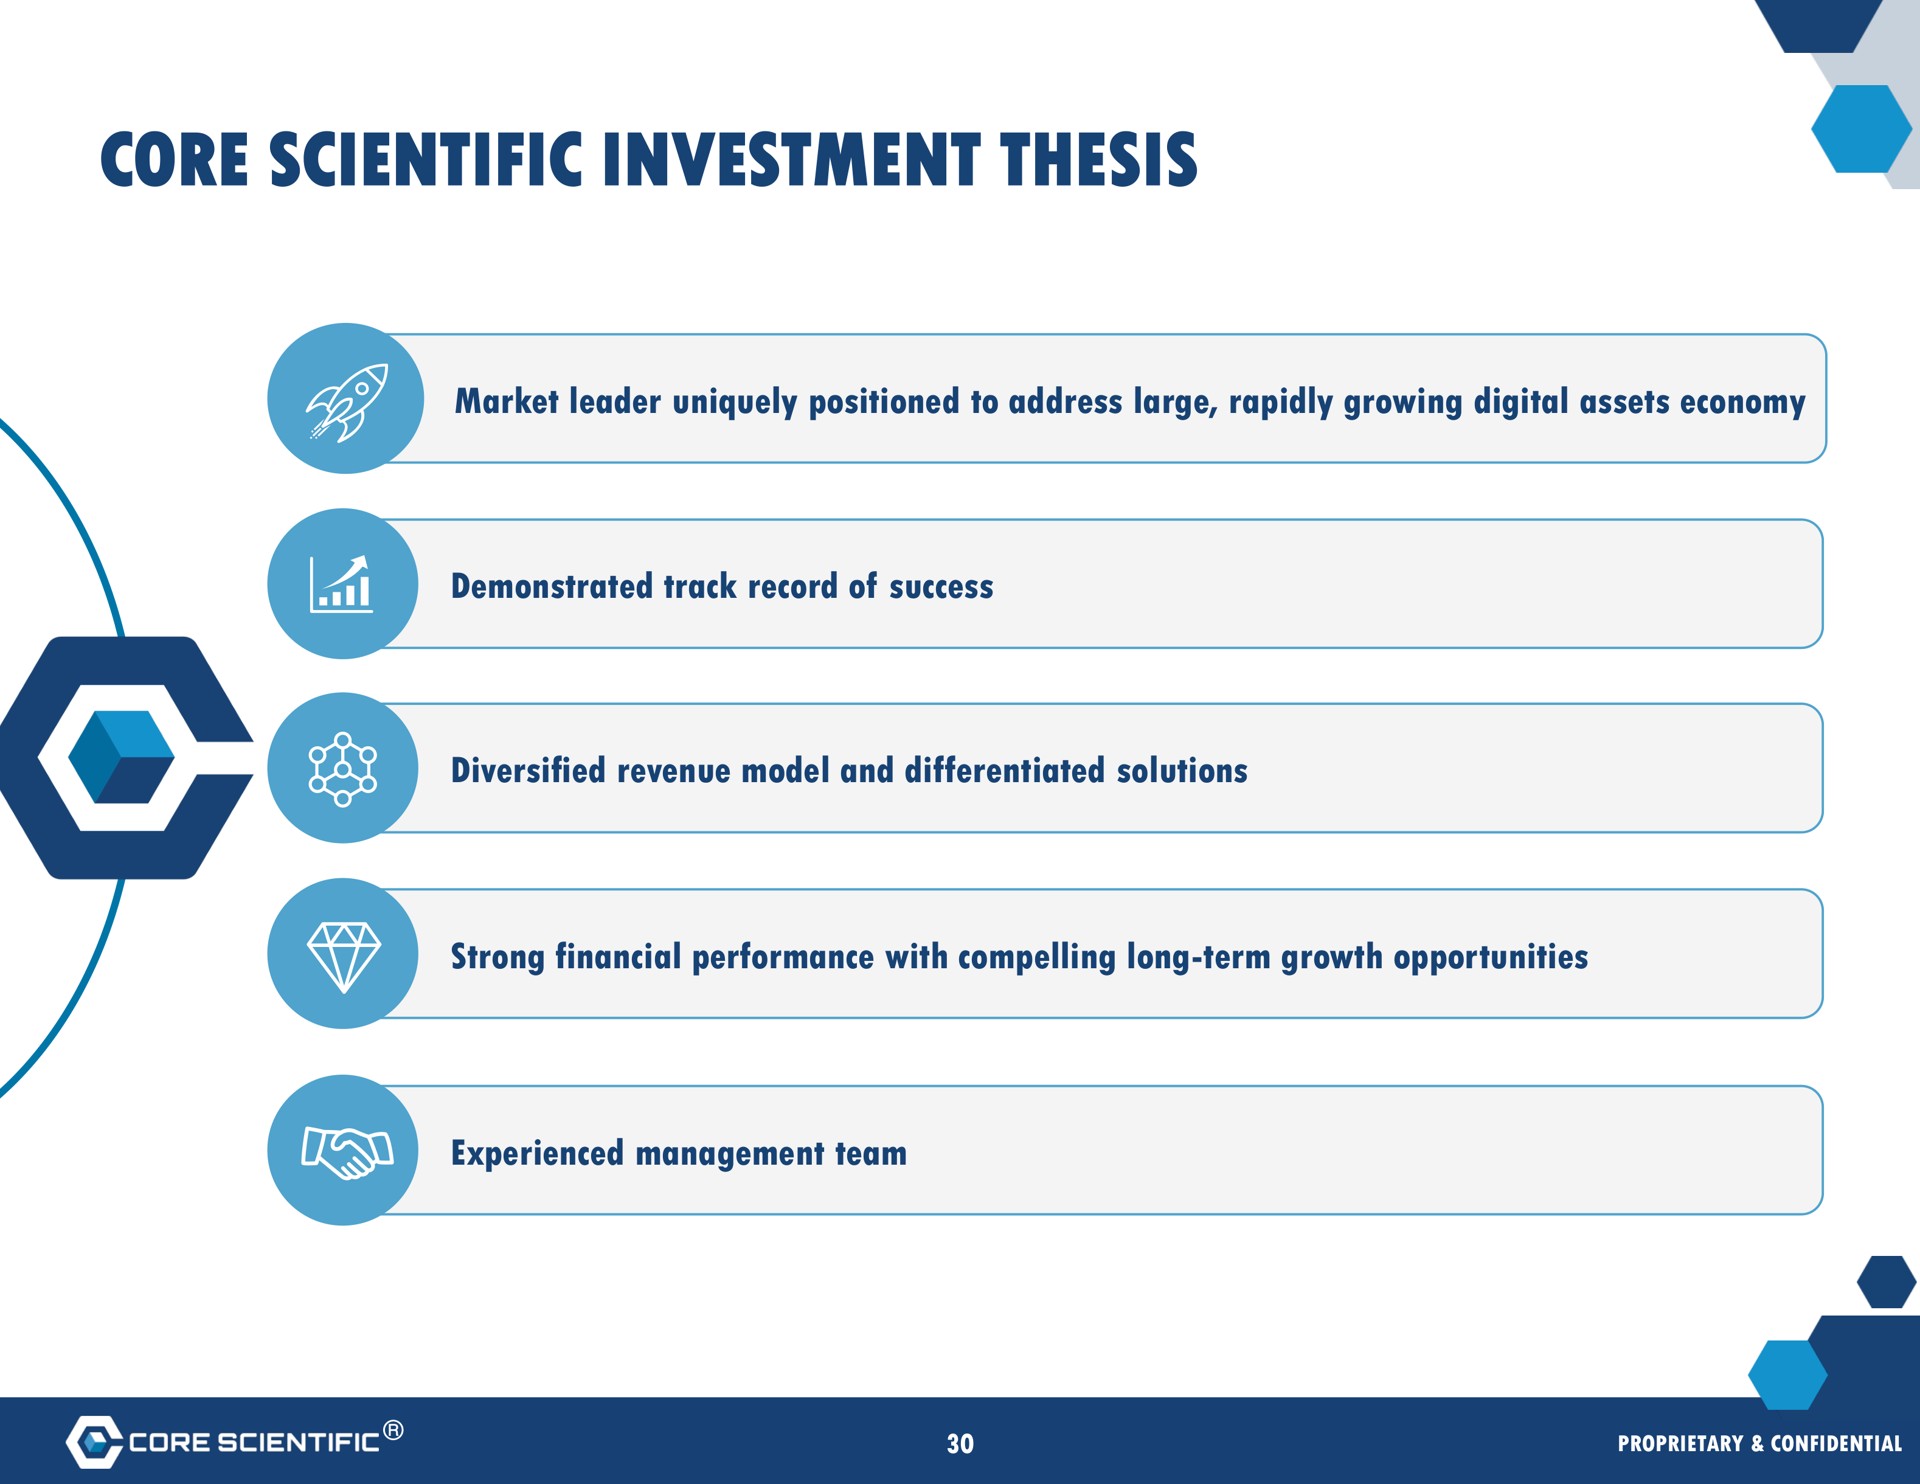 core scientific investment thesis | Core Scientific